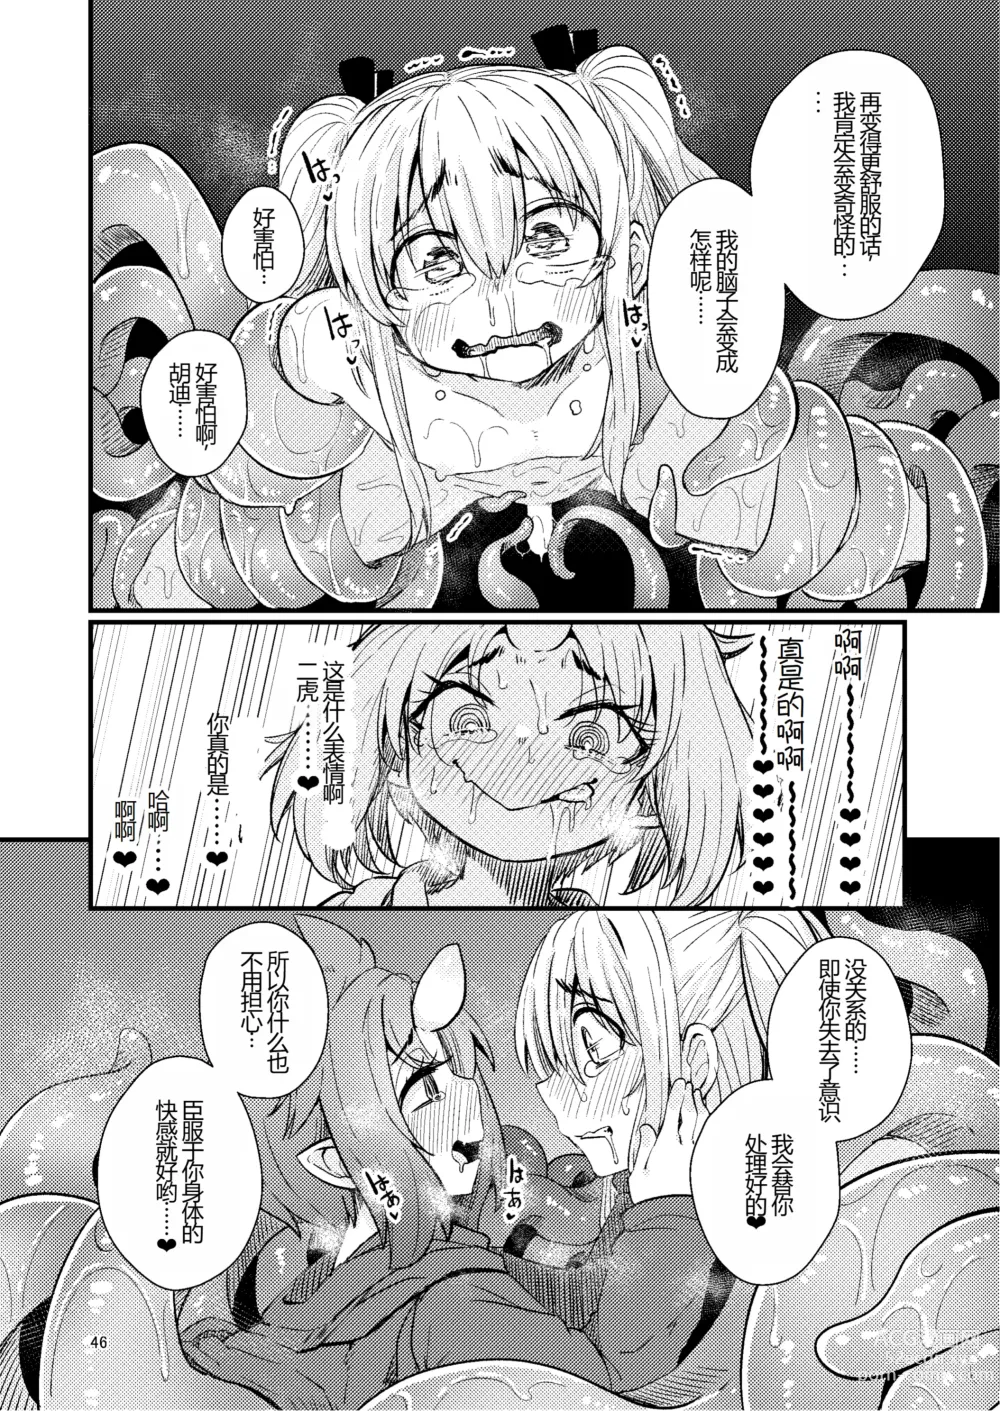 Page 46 of doujinshi Overdose Tentacles Shokushu Uri no Hoodie Tokubetsuban